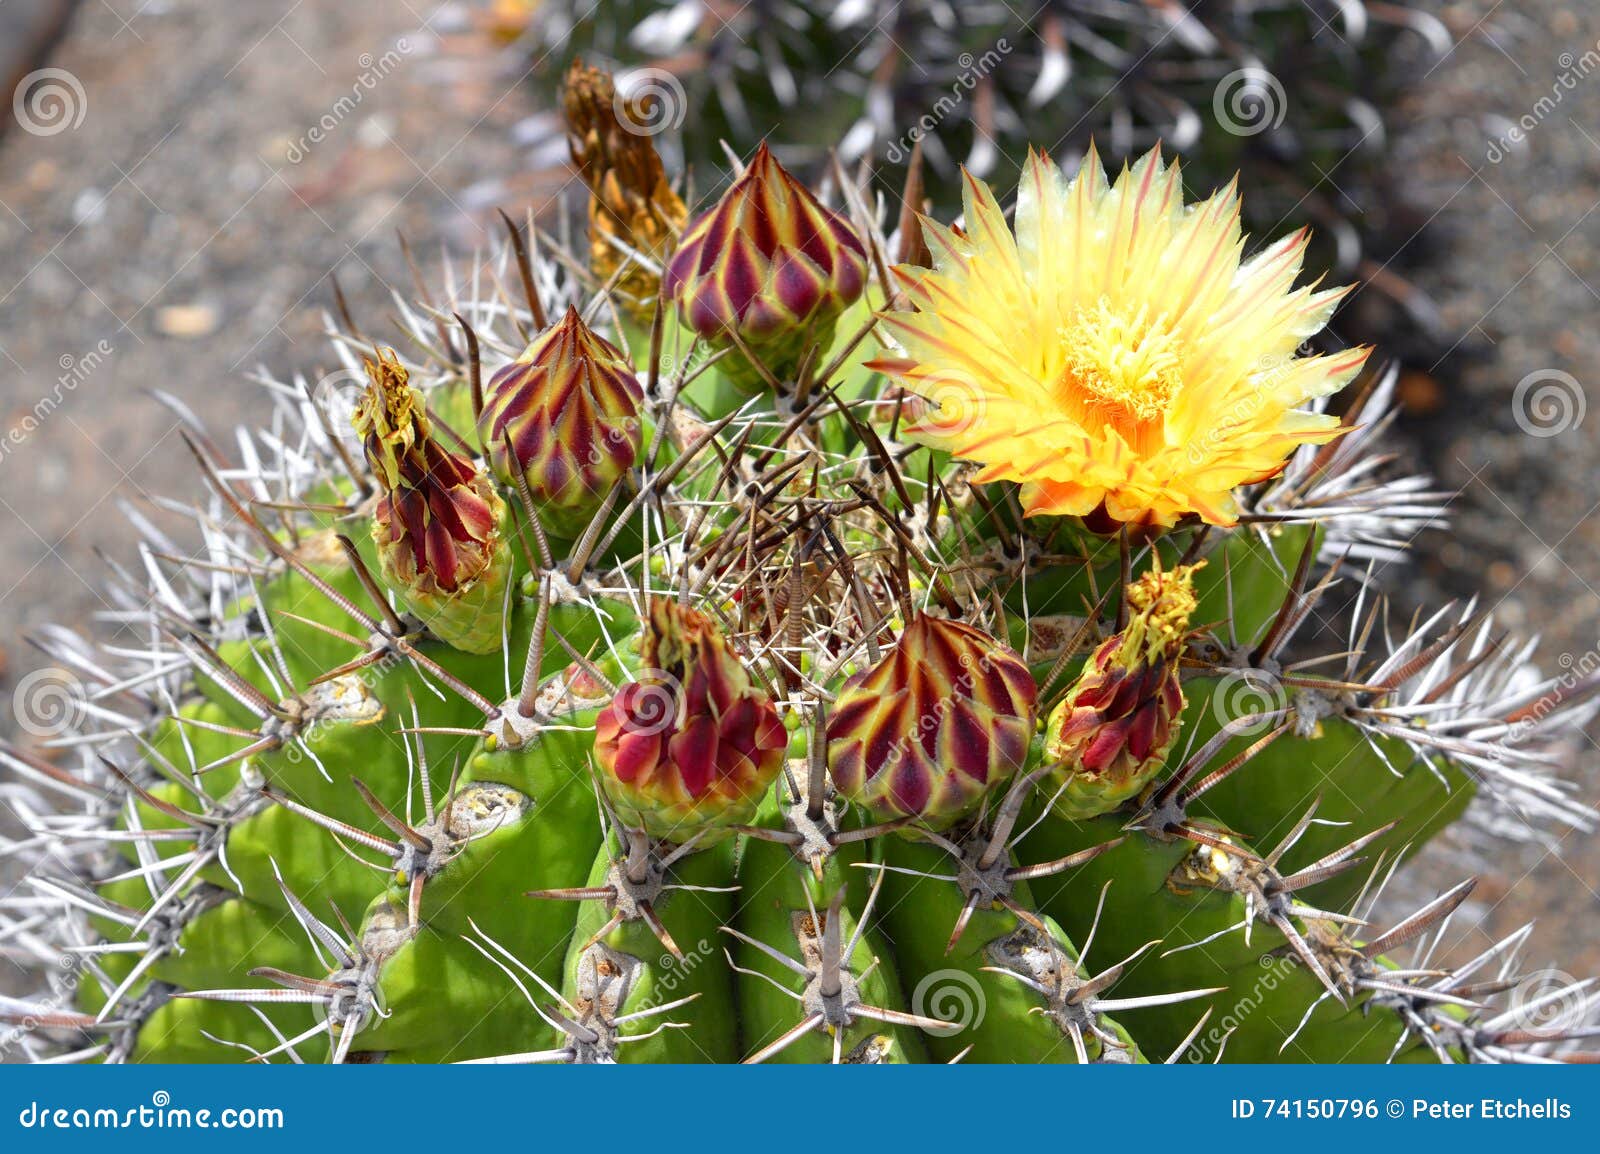 astrophytum ornatum cactus flower